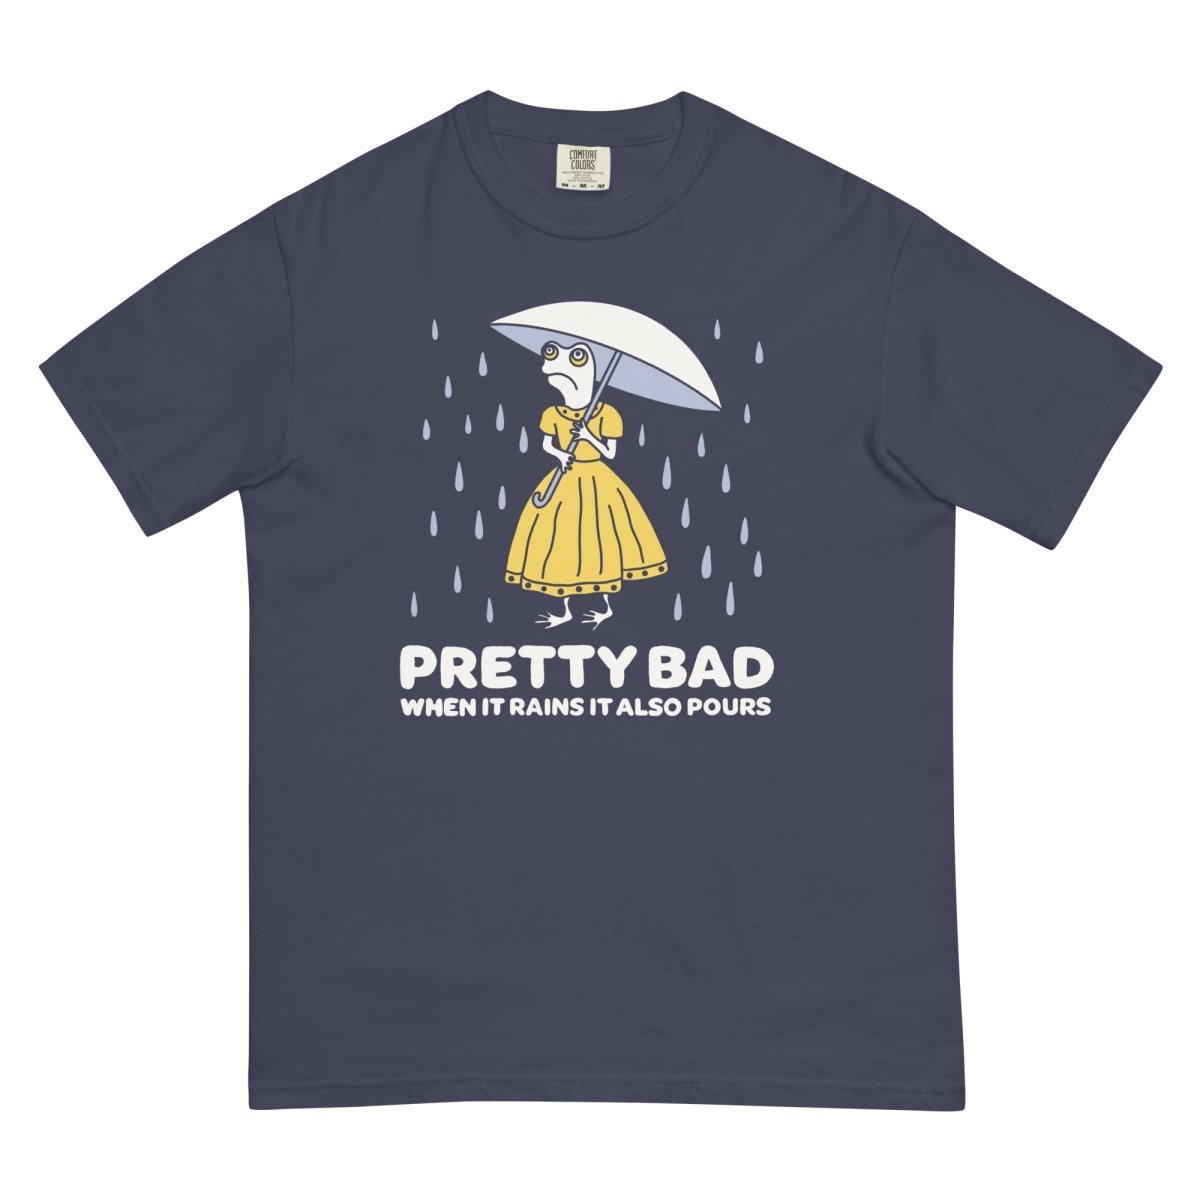 When it rains it pours t-shirt - T-Shirt - Pretty Bad Co.